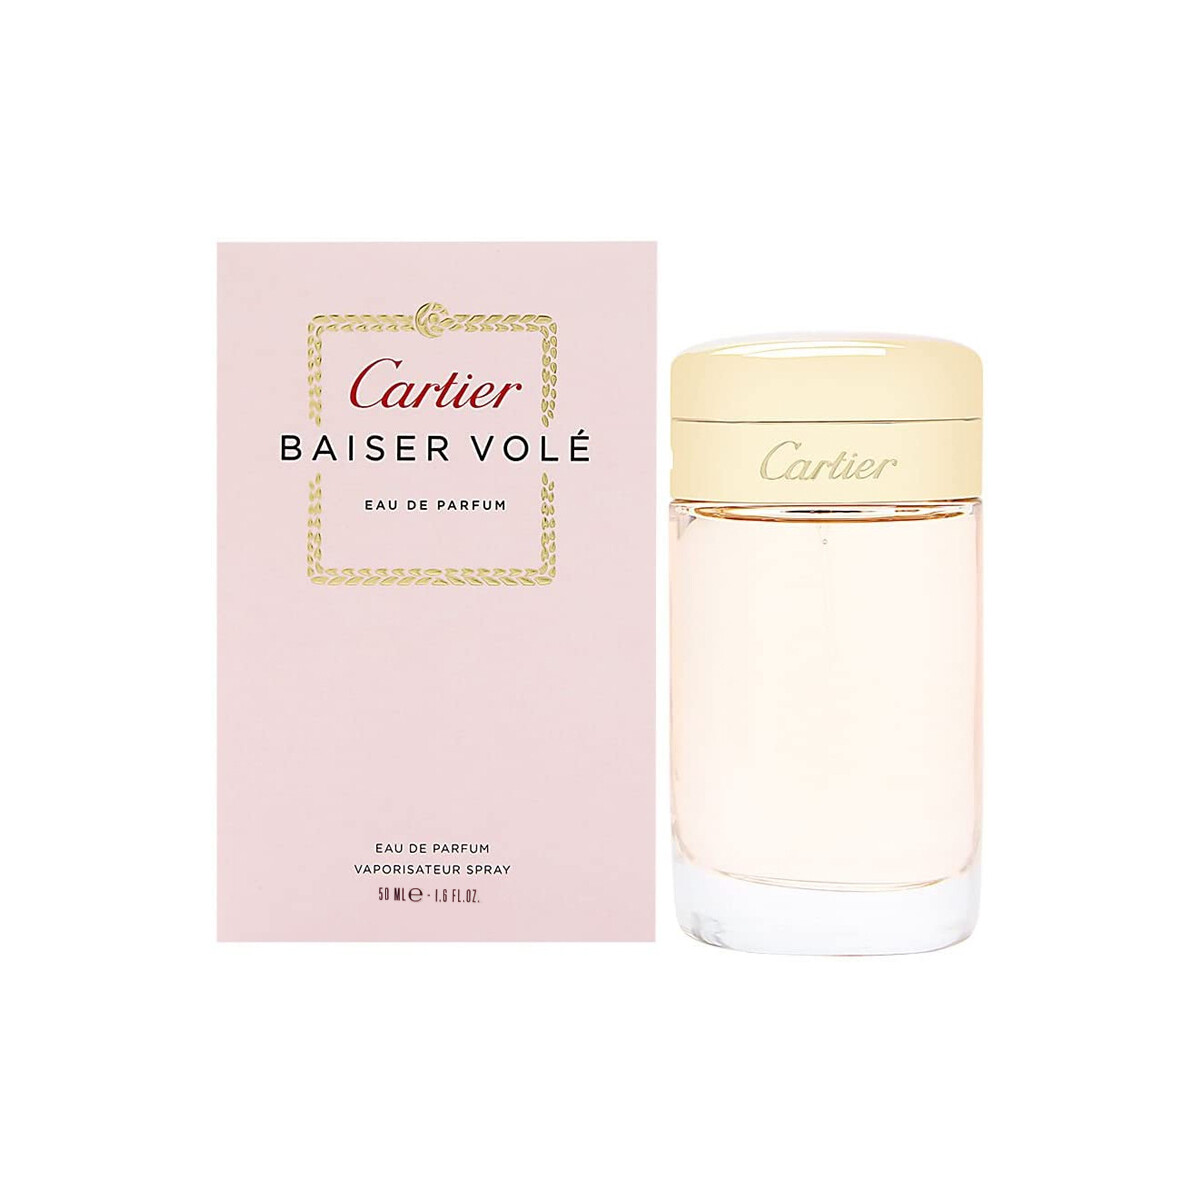 Beauty Damen Eau de parfum  Cartier Baiser Vole - Parfüm - 50ml - VERDAMPFER Baiser Vole - perfume - 50ml - spray